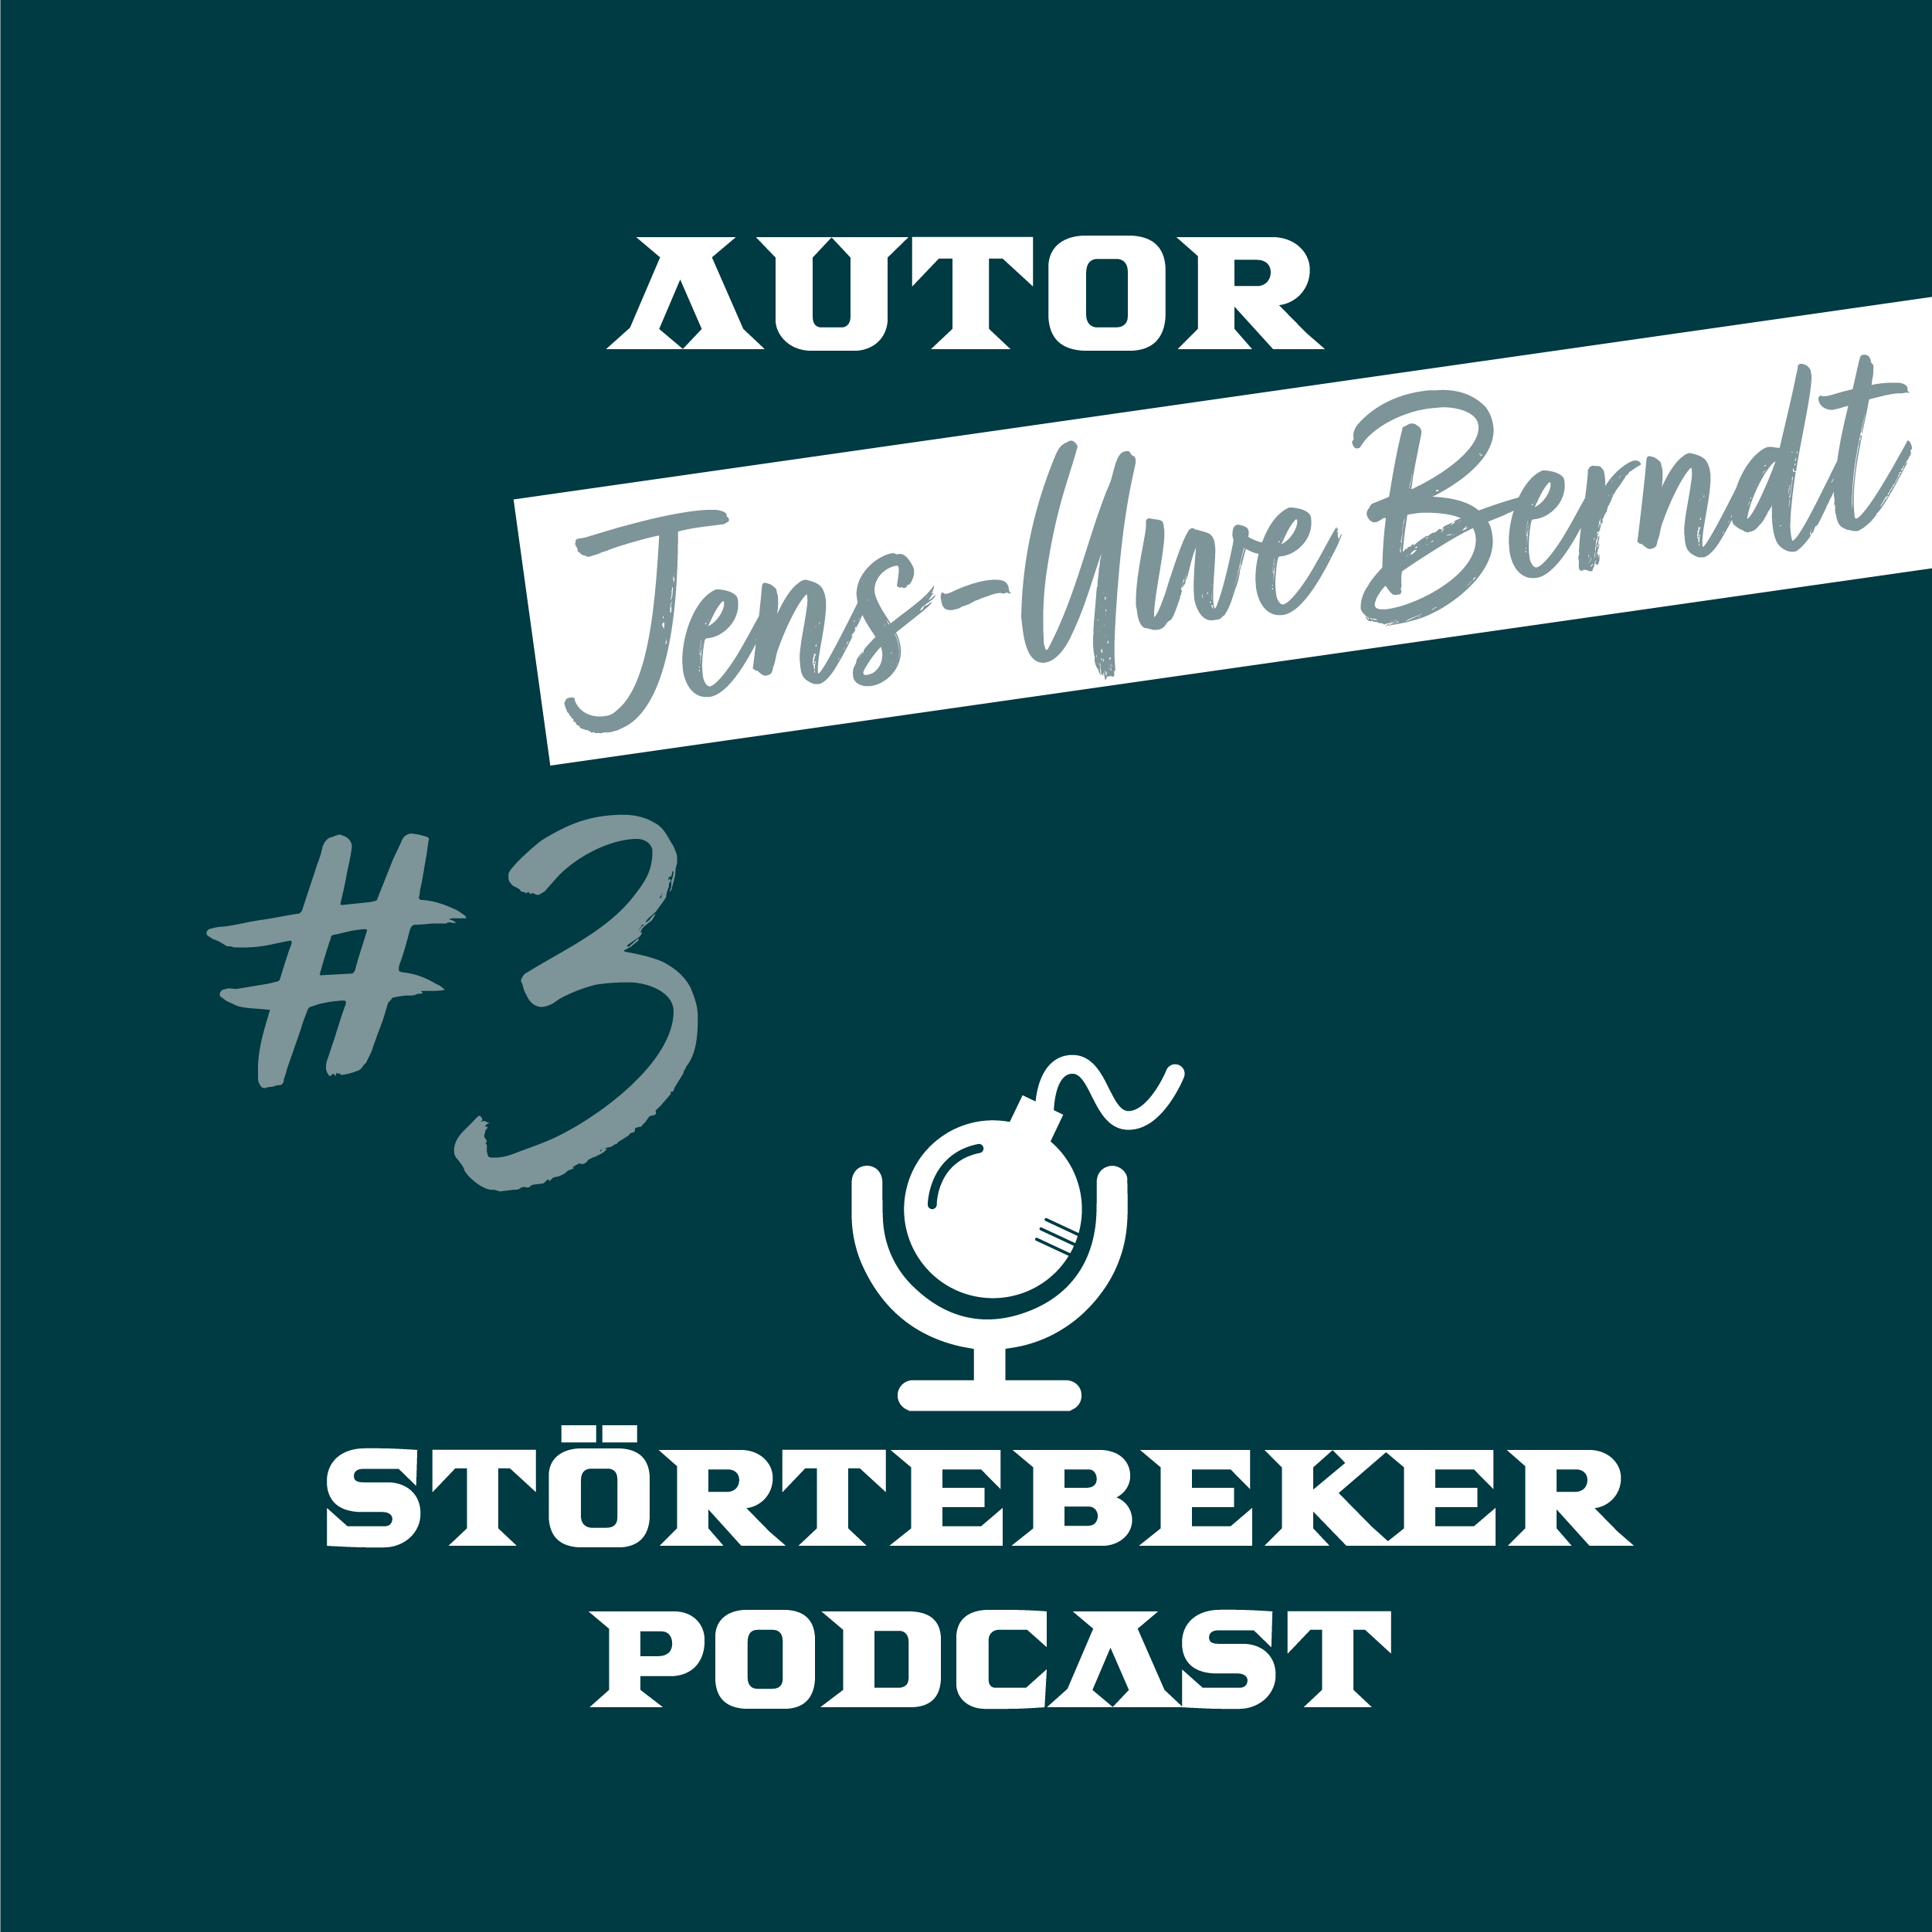 Störtebeker Podcast  #3 ⎮ Author ⎮ Jens-Uwe Berndt